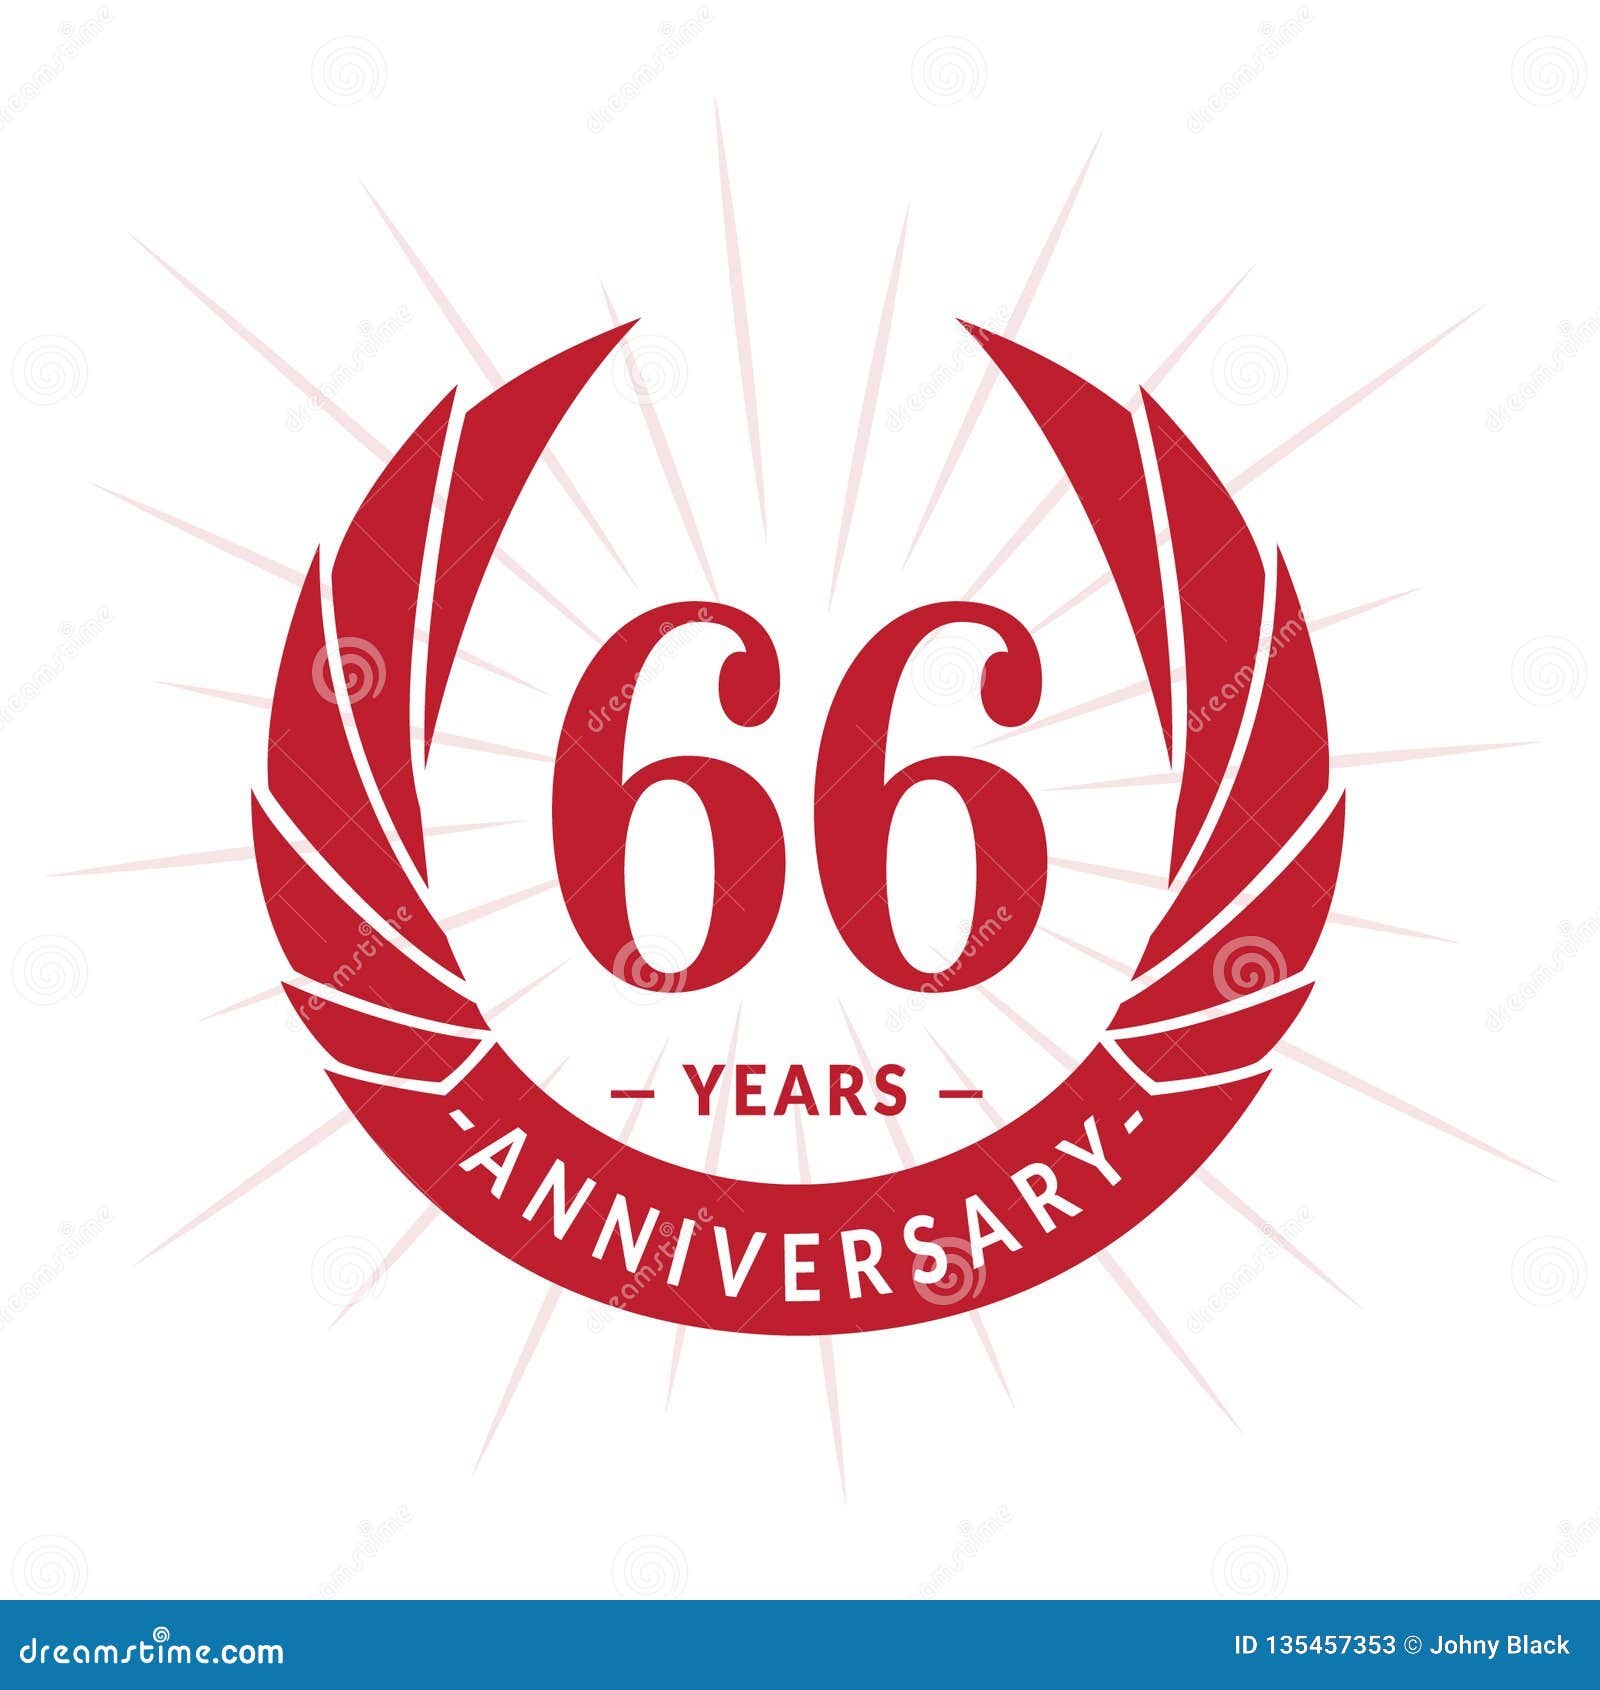 Шестьдесят шестой год. 60 Лет логотип. 60 Years Anniversary. 90 Years logo. Logo Sixty years.